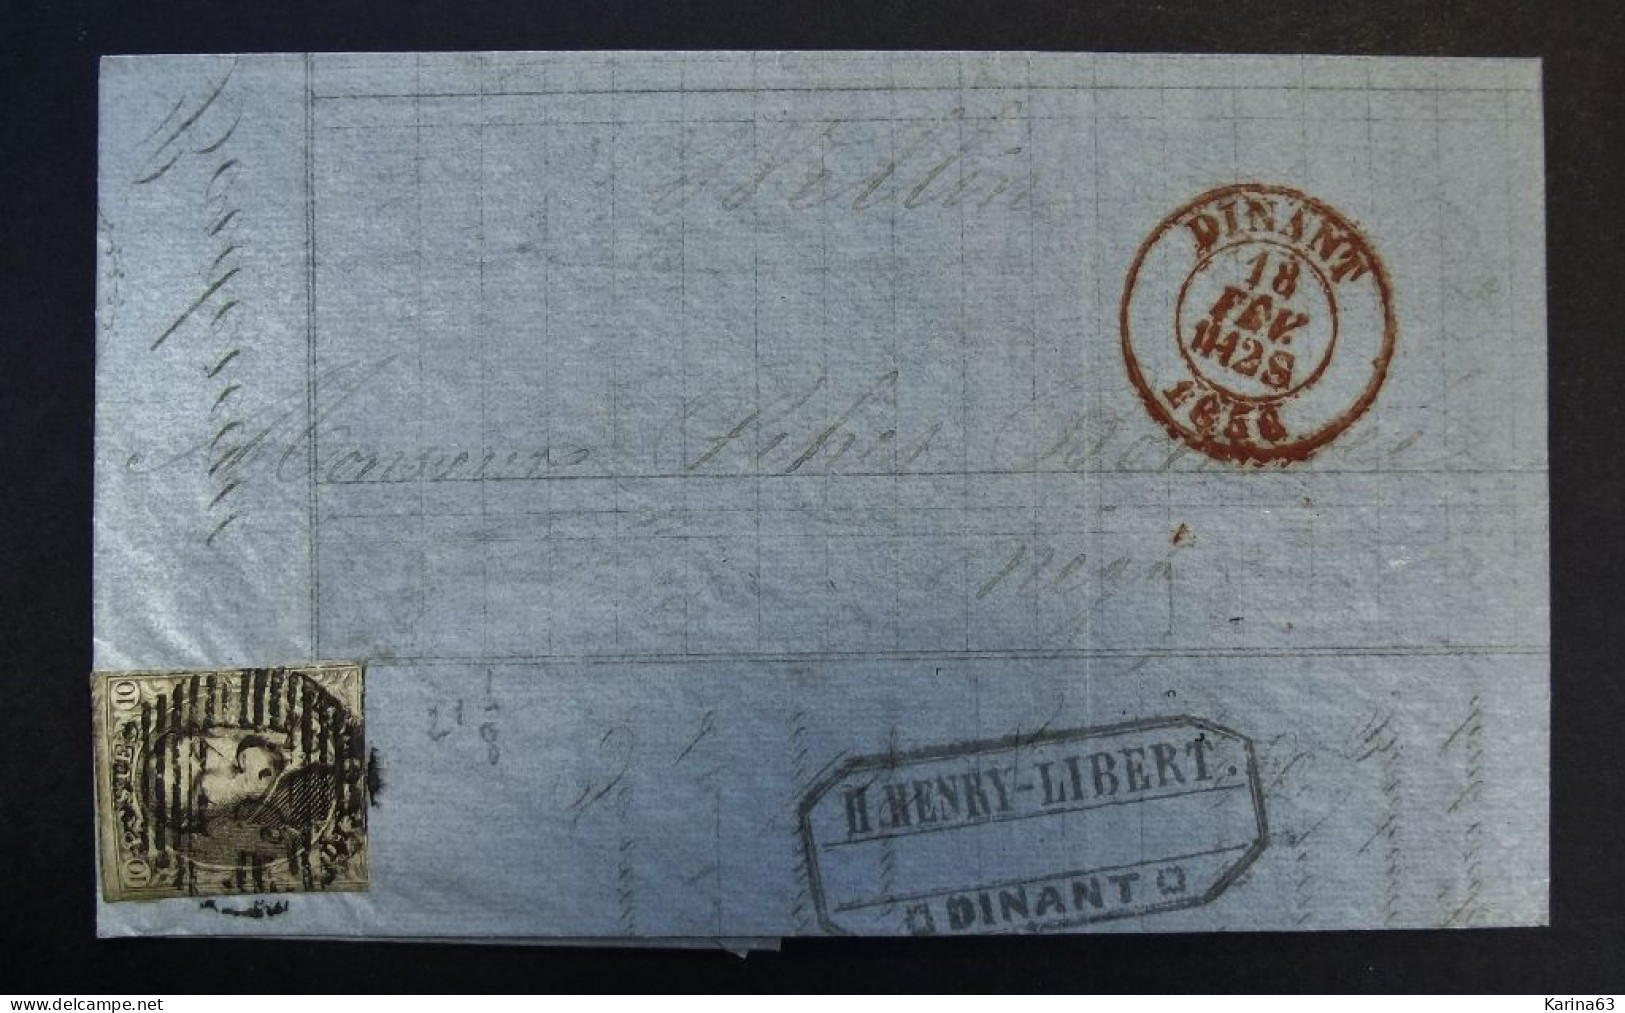 België - Belgique Lettre Banque Recouvrements Henri-Libert - Epaulettes N° 3A - 10c Margé Barres 33 Dinant Wellin - 1856 - 1849-1850 Medallions (3/5)